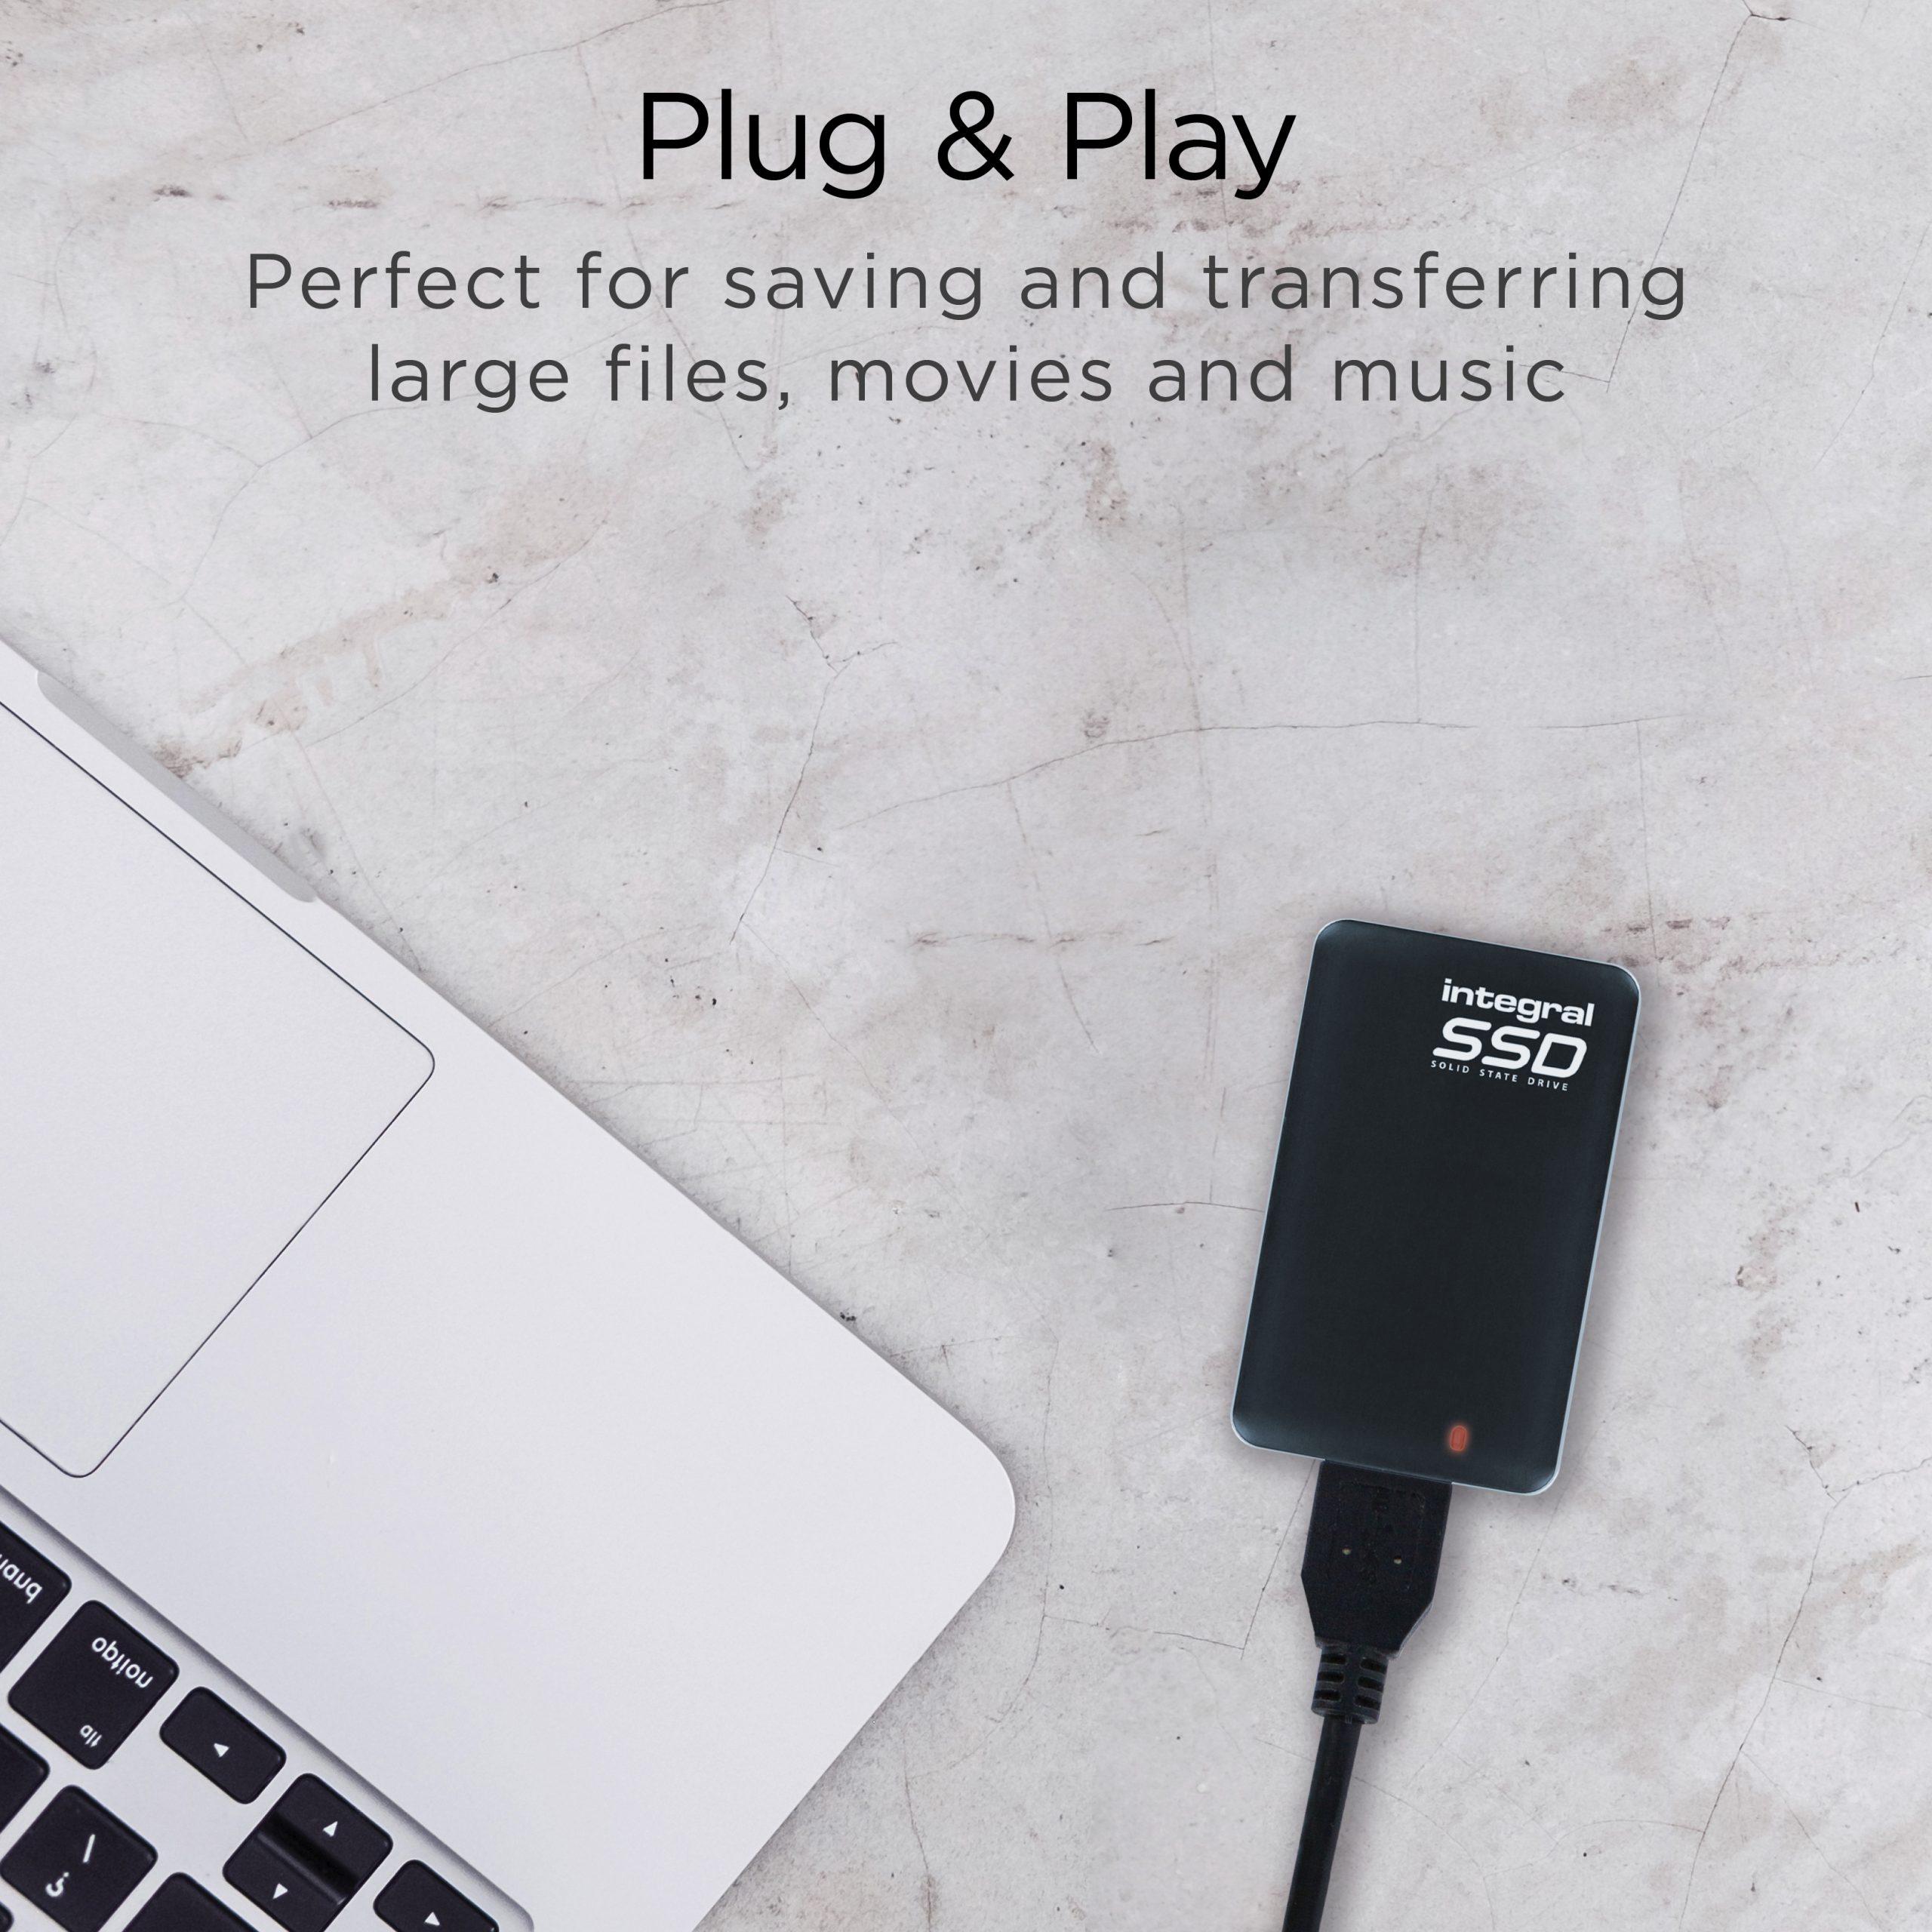 USB 3.0 External SSD Plug and Play